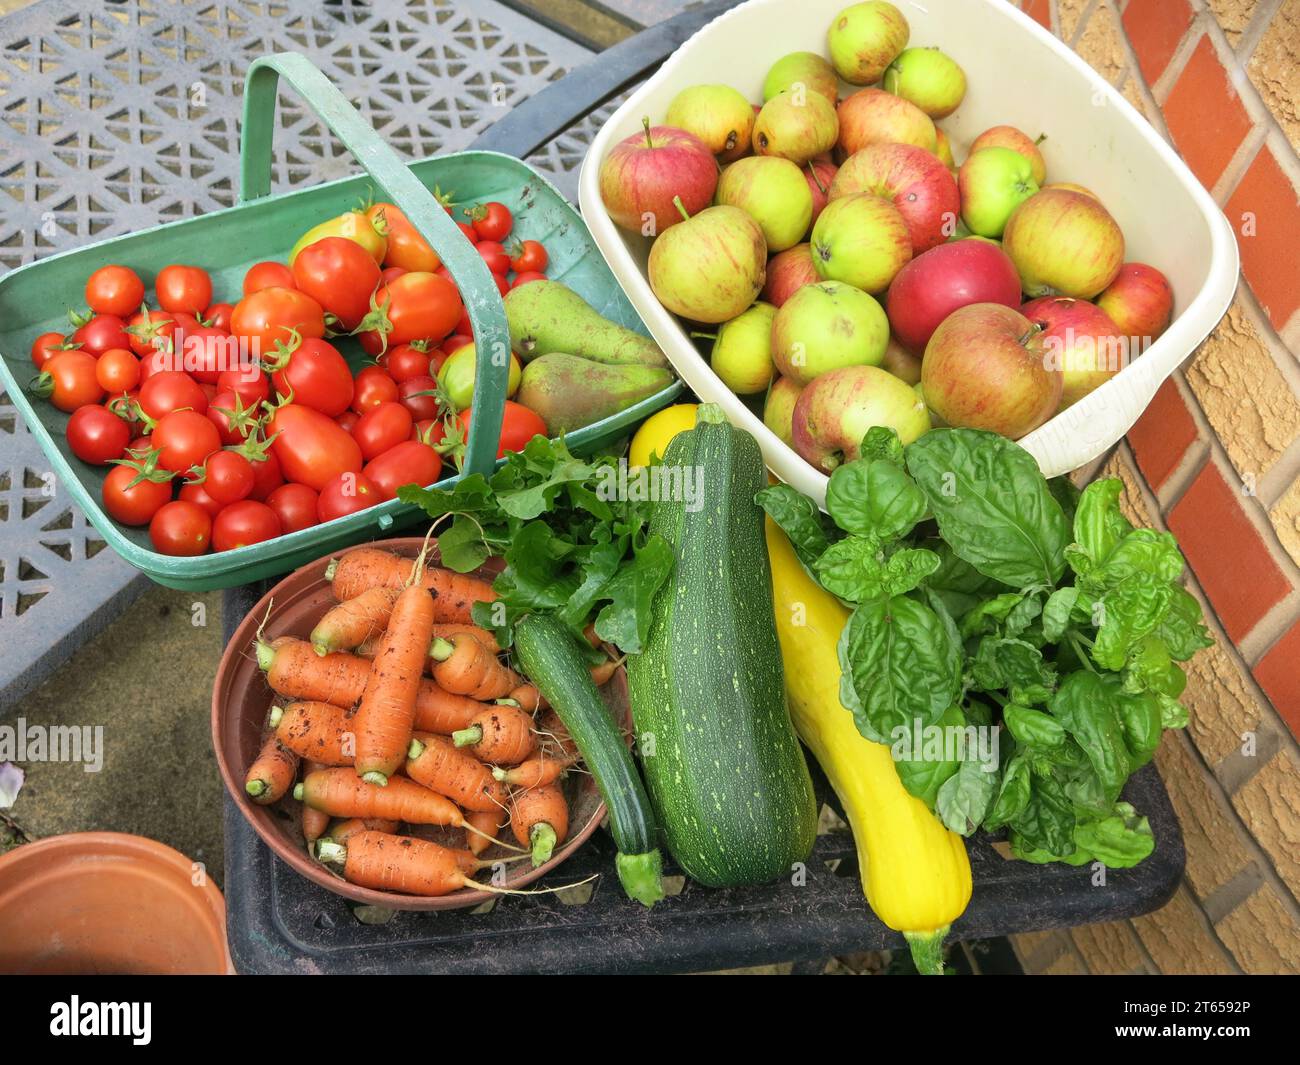 Die Ernte wurde von einem kleinen Gemüsegrundstück und Obstbäumen in einem englischen Garten geerntet und macht eine bunte Präsentation für 5 gesunde Ernährung am Tag Stockfoto